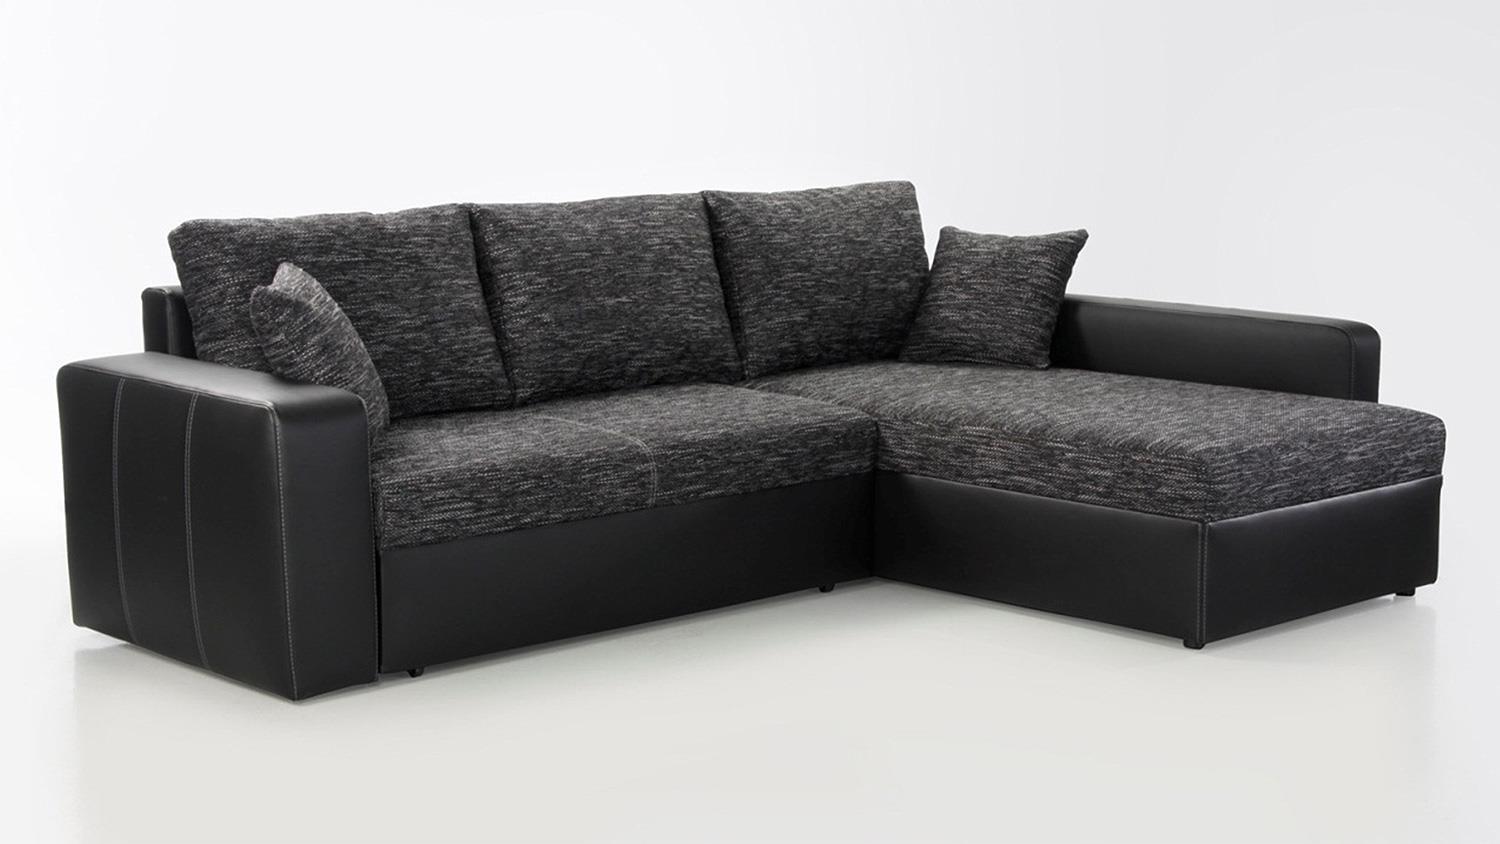 Ecksofa VIPER Sofa in schwarz anthrazit mit Bettfunktion Bild 1